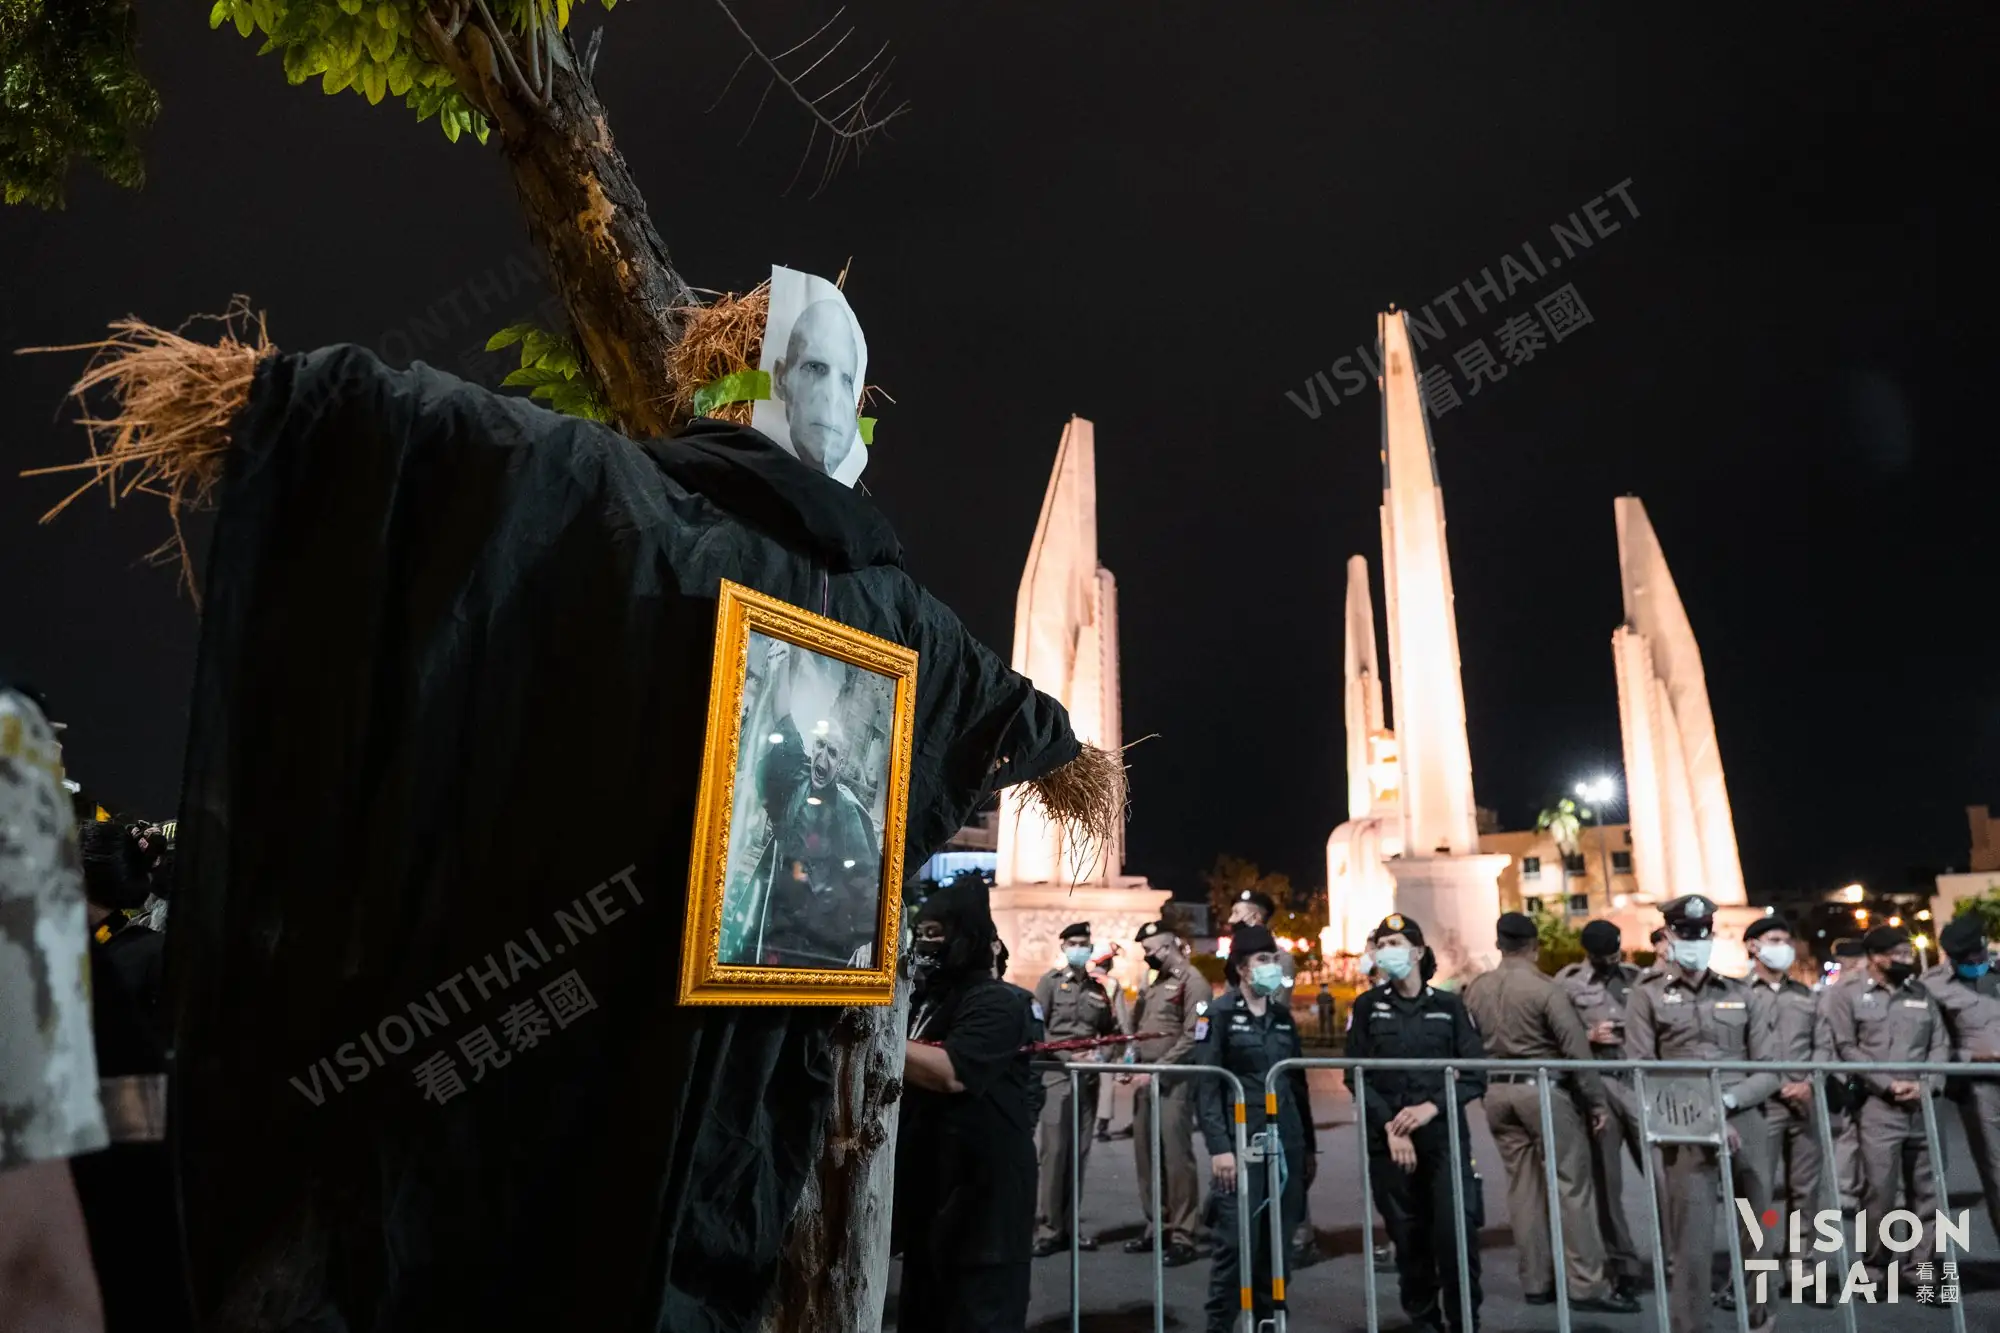 泰國反政府運動以哈利波特為主題發起“那個人(คนที่คุณก็รู้ว่าใคร)”示威活動